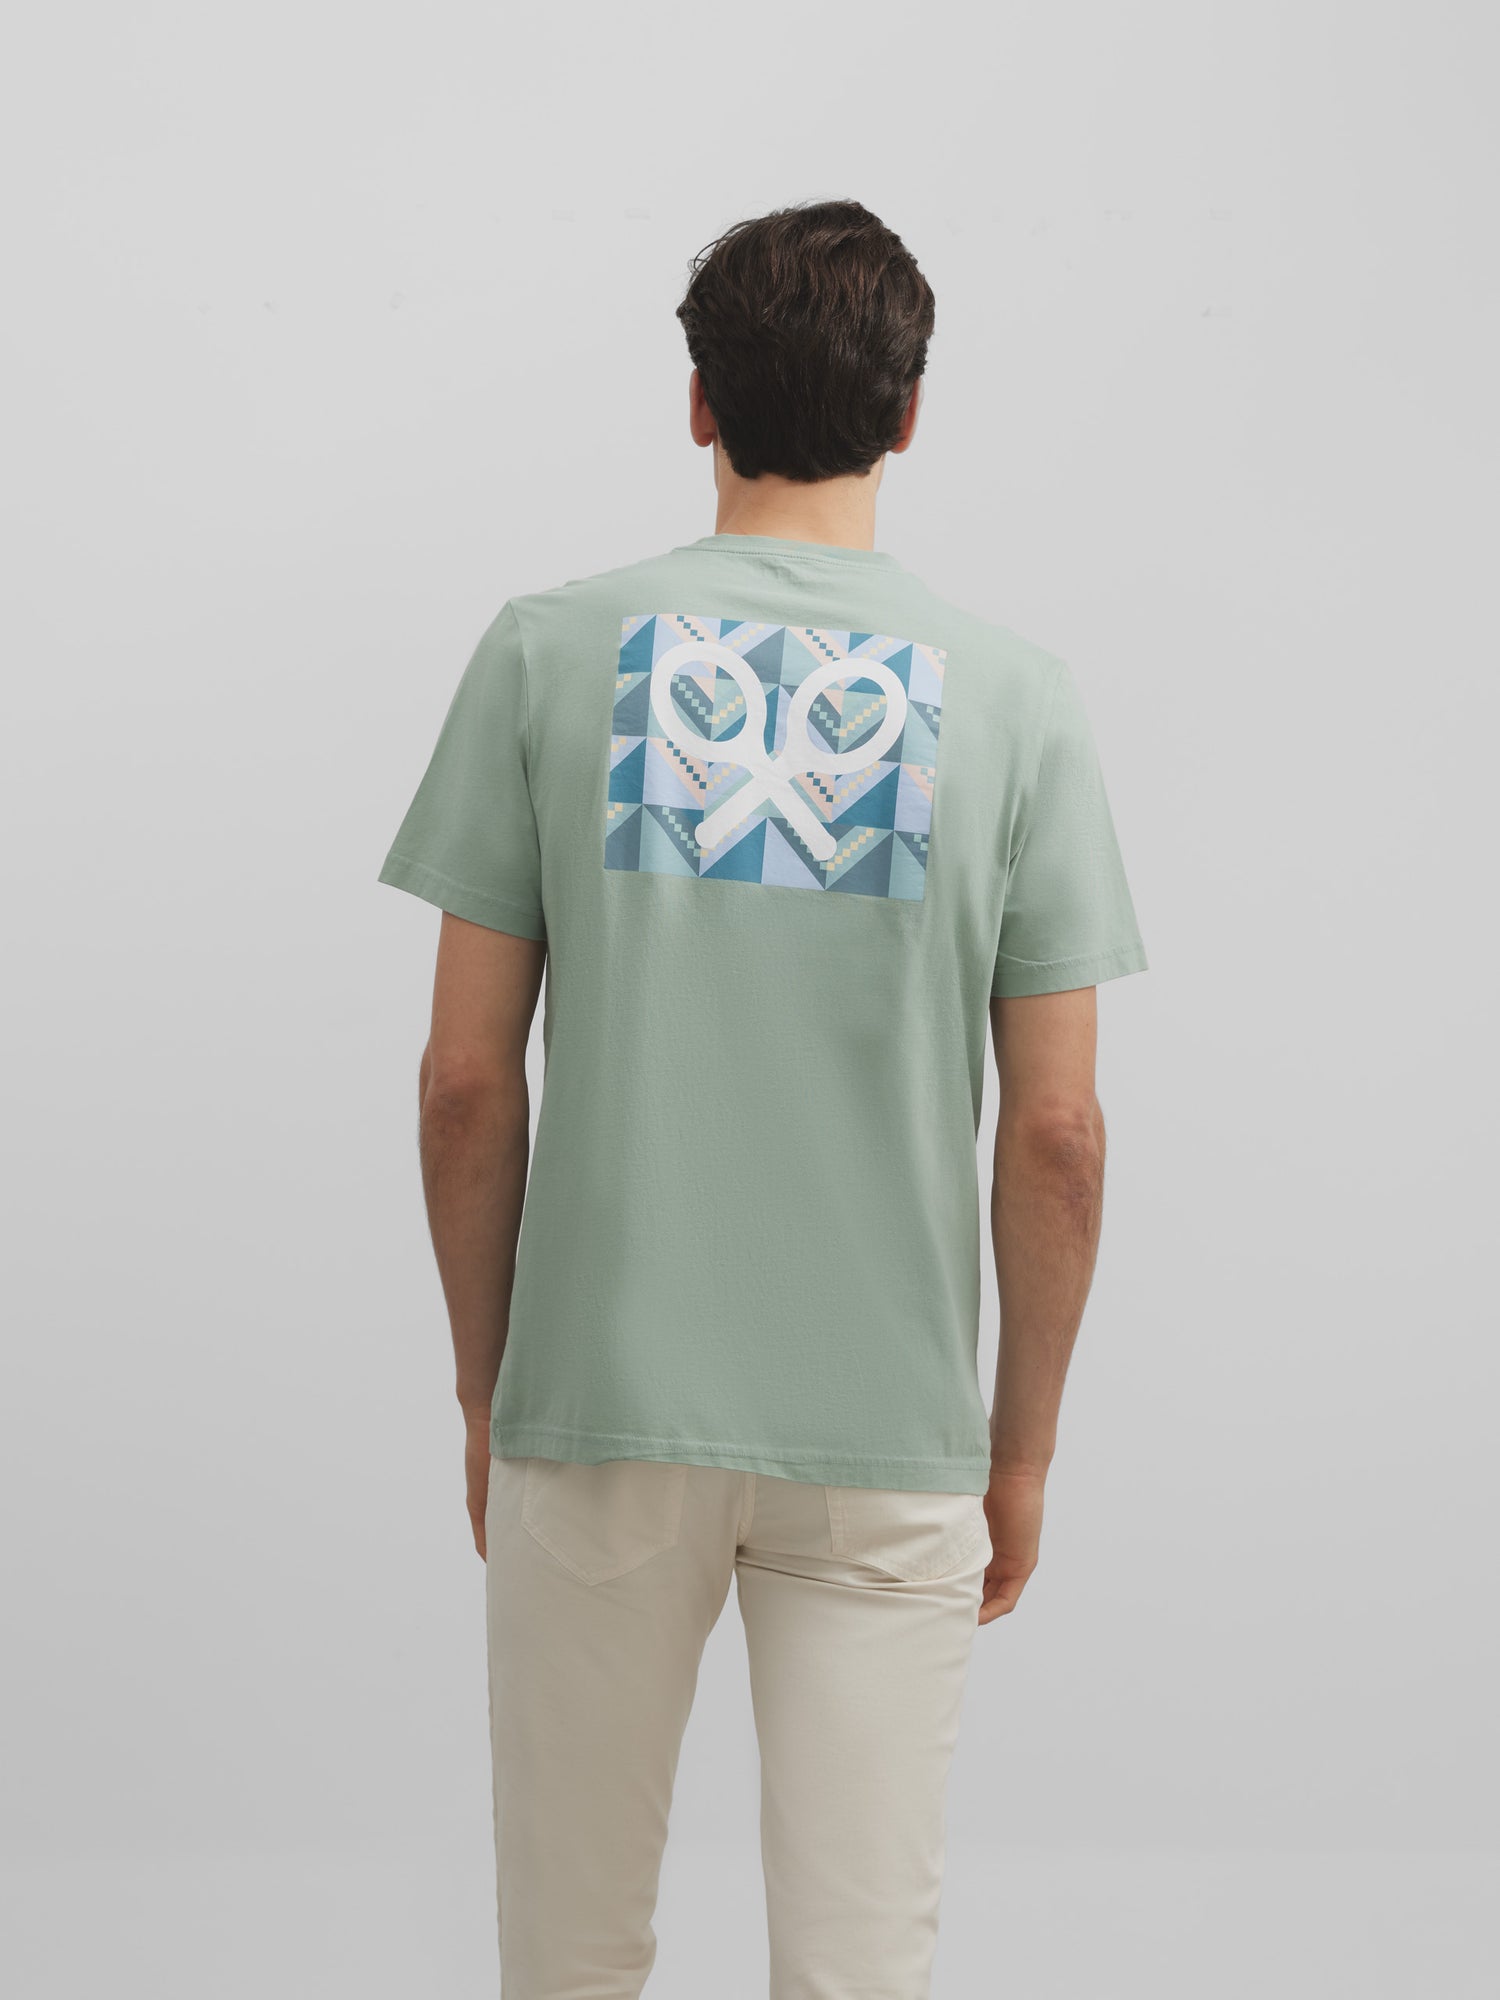 T-shirt raquette géométrique vert